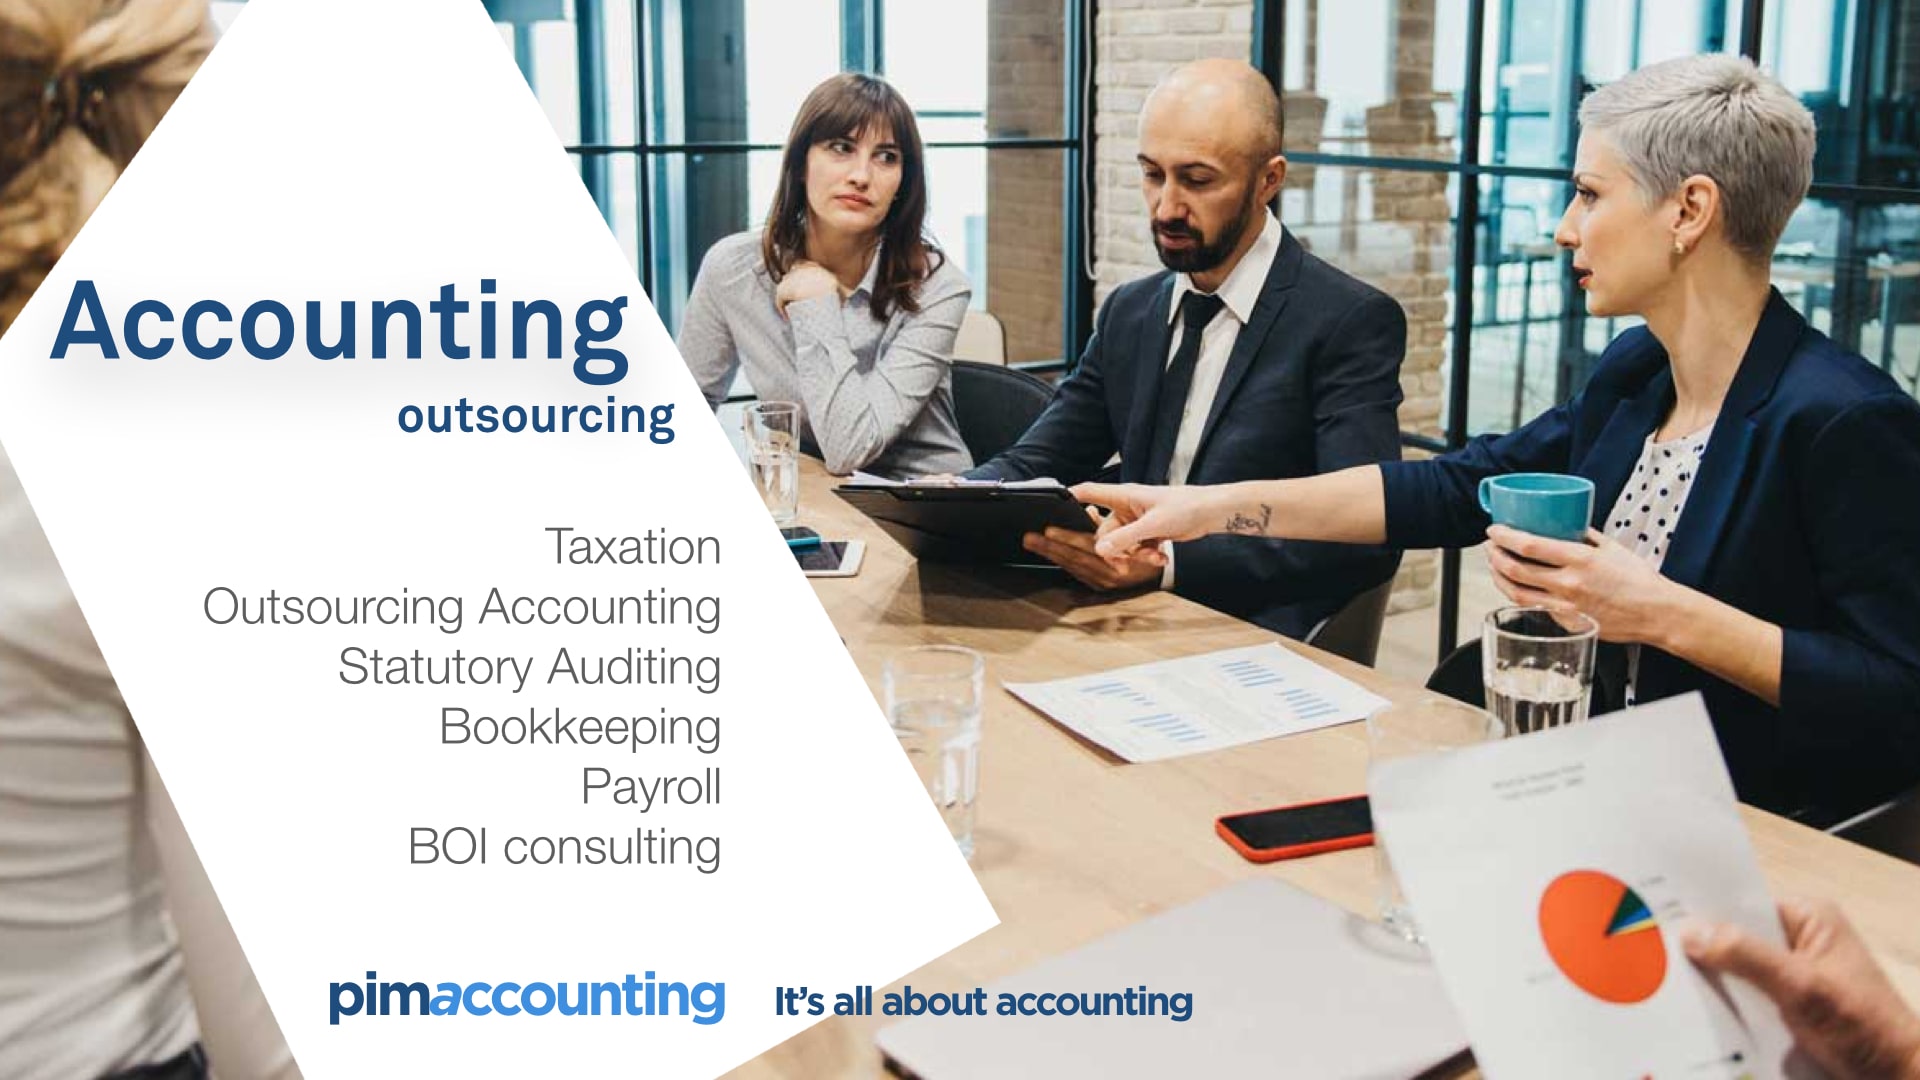 pim accounting - accounting company bangkok